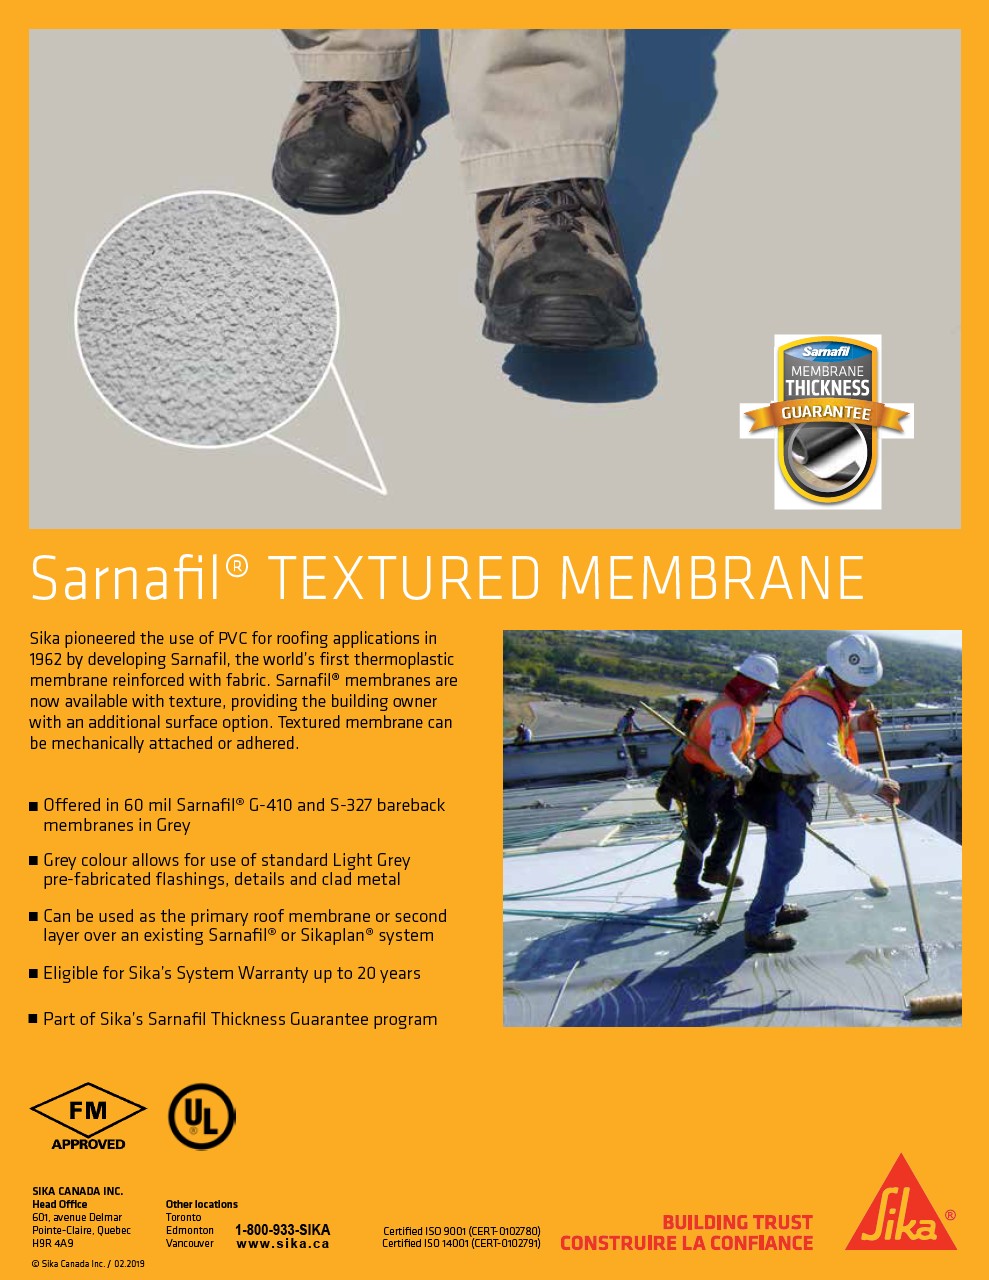   Sarnafil Textured Membrane